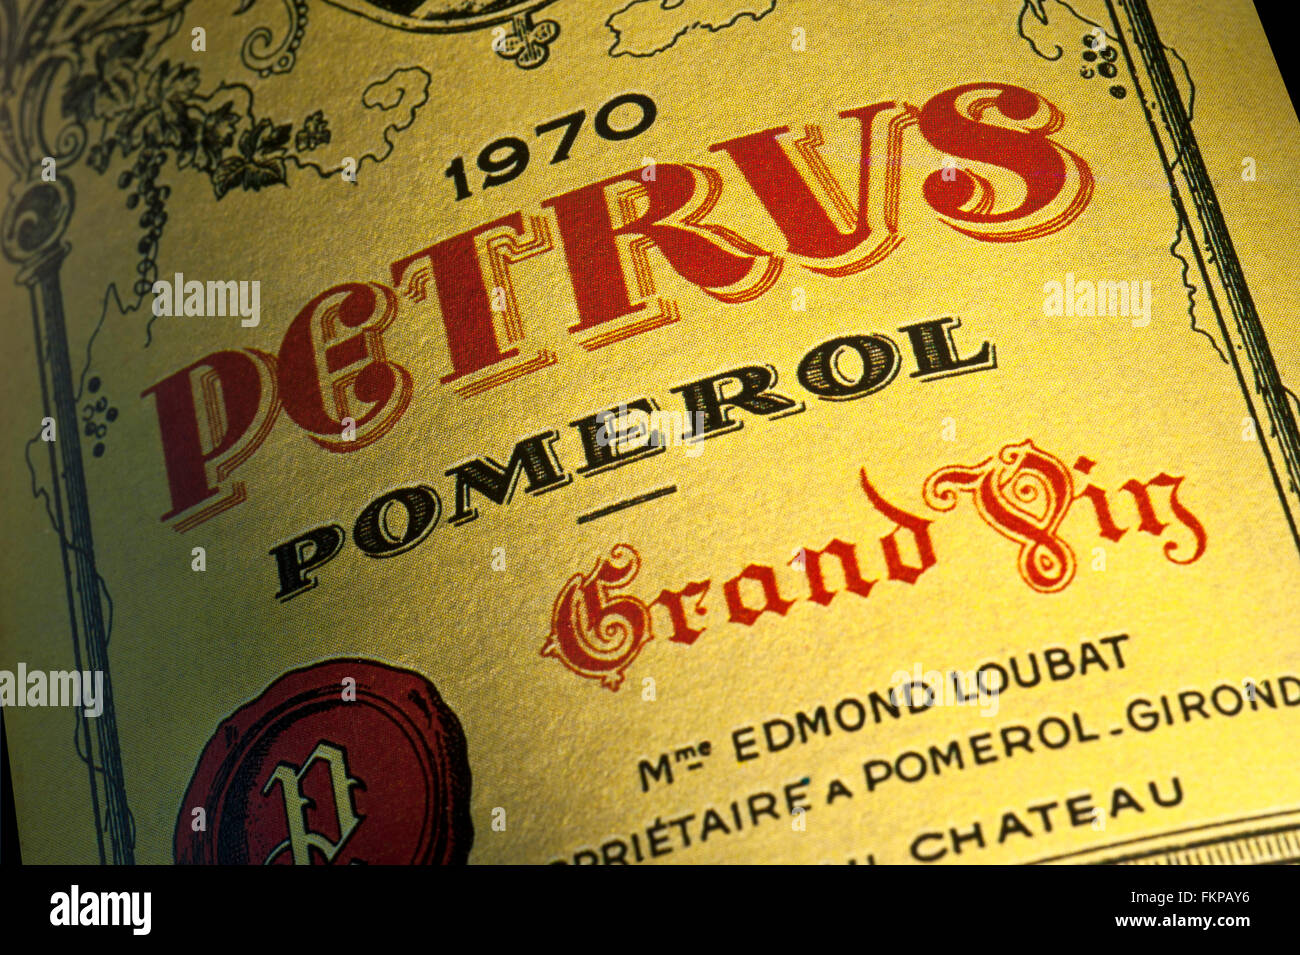 Flaschen-Etikett von 1970 Chateau Petrus Pomerol Grand Vin roten Wein Bordeaux Frankreich Stockfoto